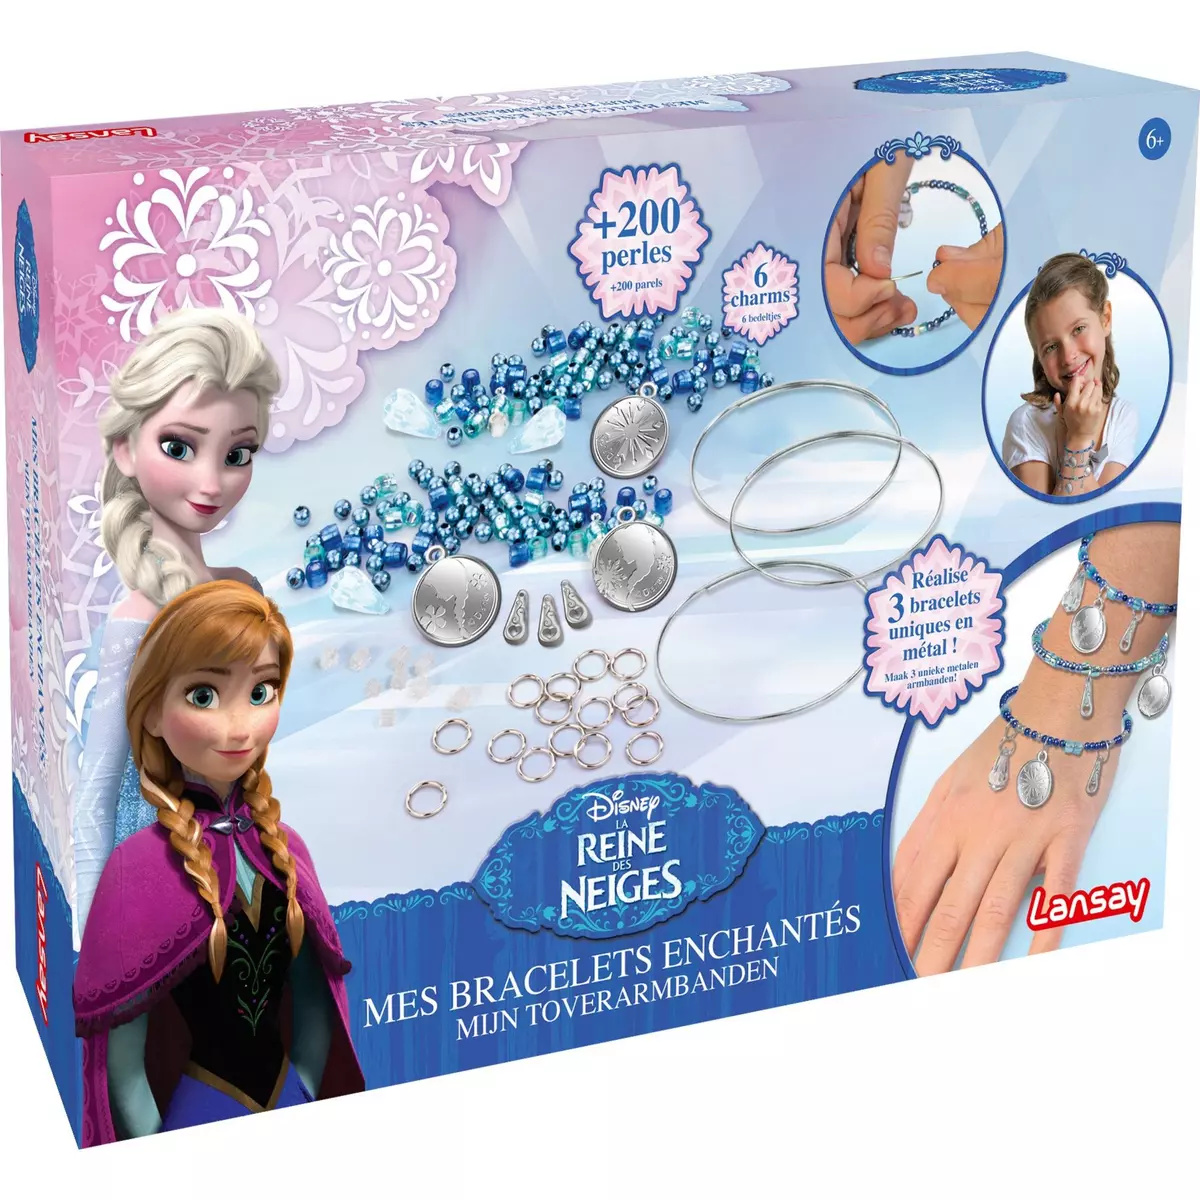 LANSAY Bracelets enchantés La Reine des Neiges - Disney